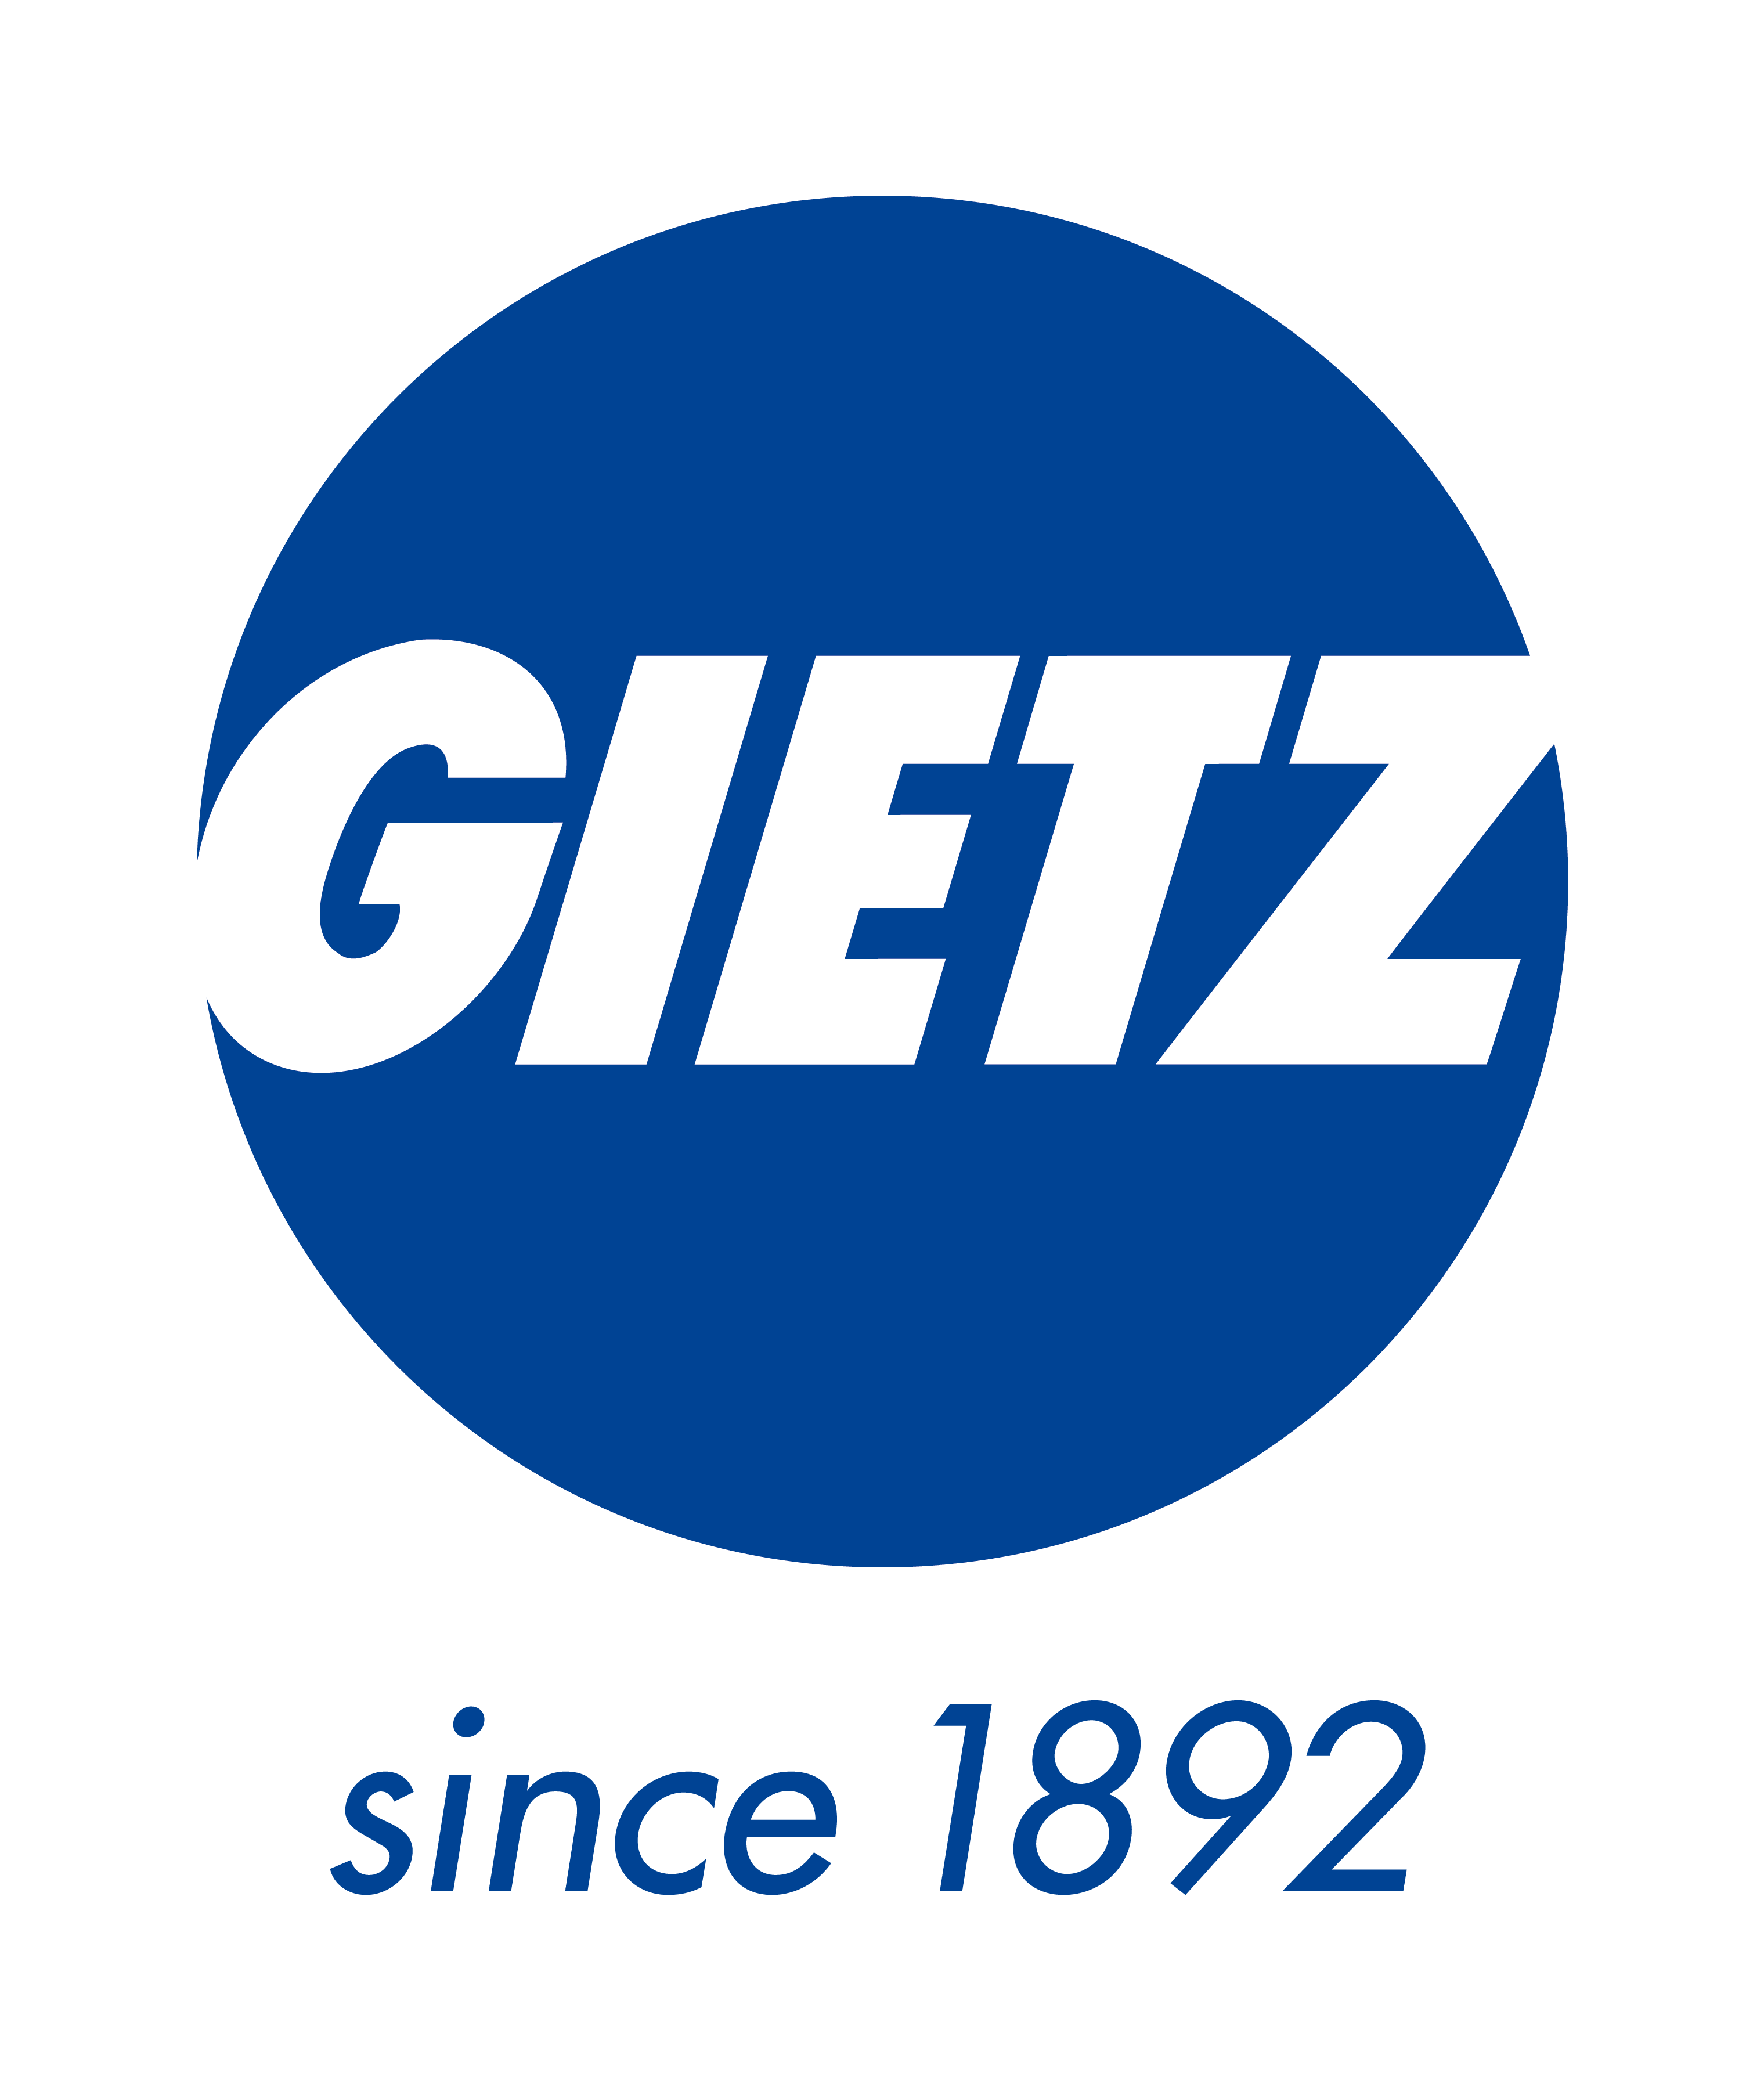 Gietz AG